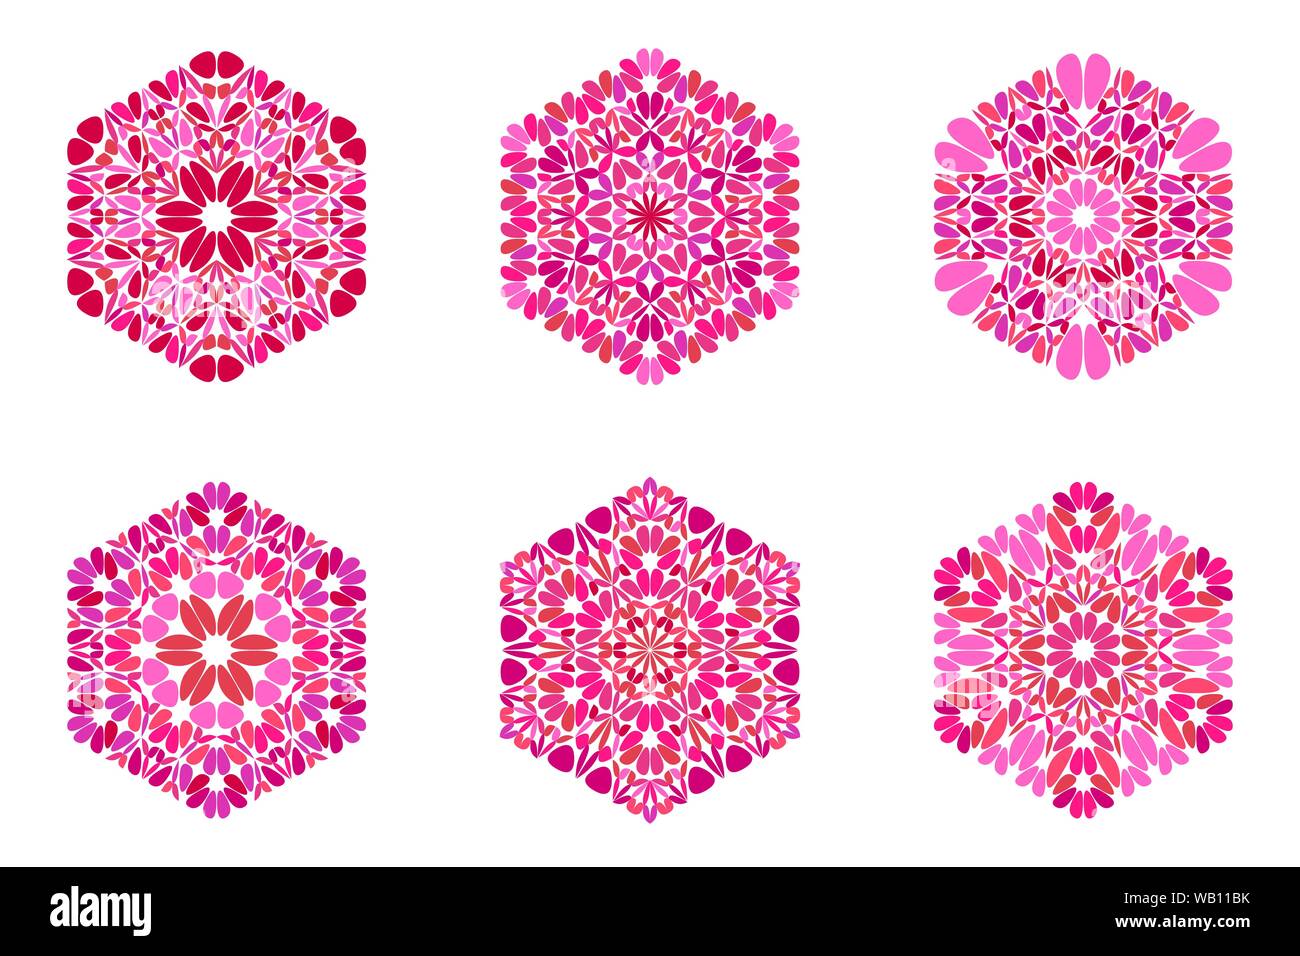 Reich verzierte Isoliert floralen Ornament hexagon Symbolsatz - Dekorative bunte geometrische Vector Graphic Designs Stock Vektor